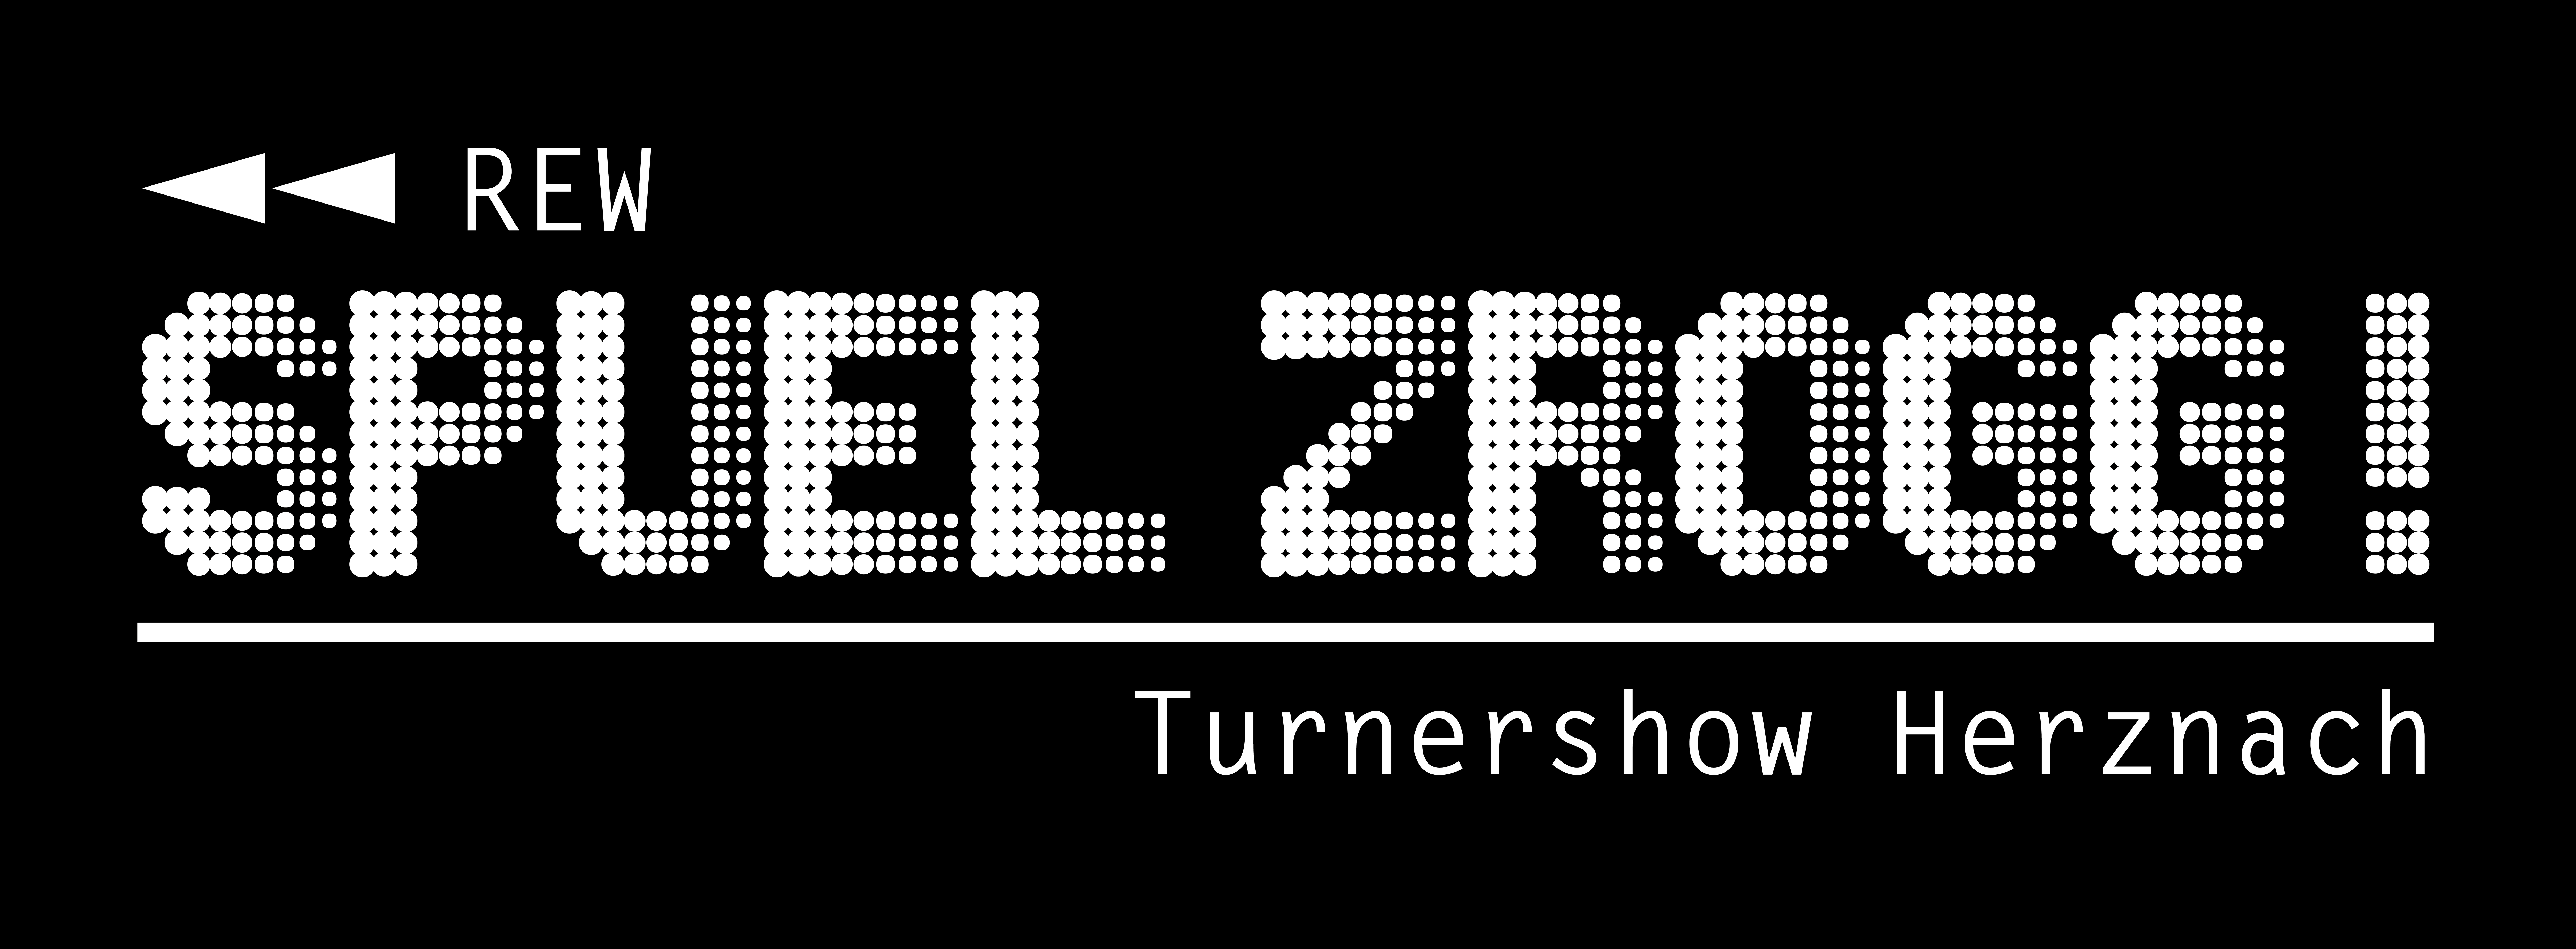 Spuel zrogg! – Turnershow Herznach 2023